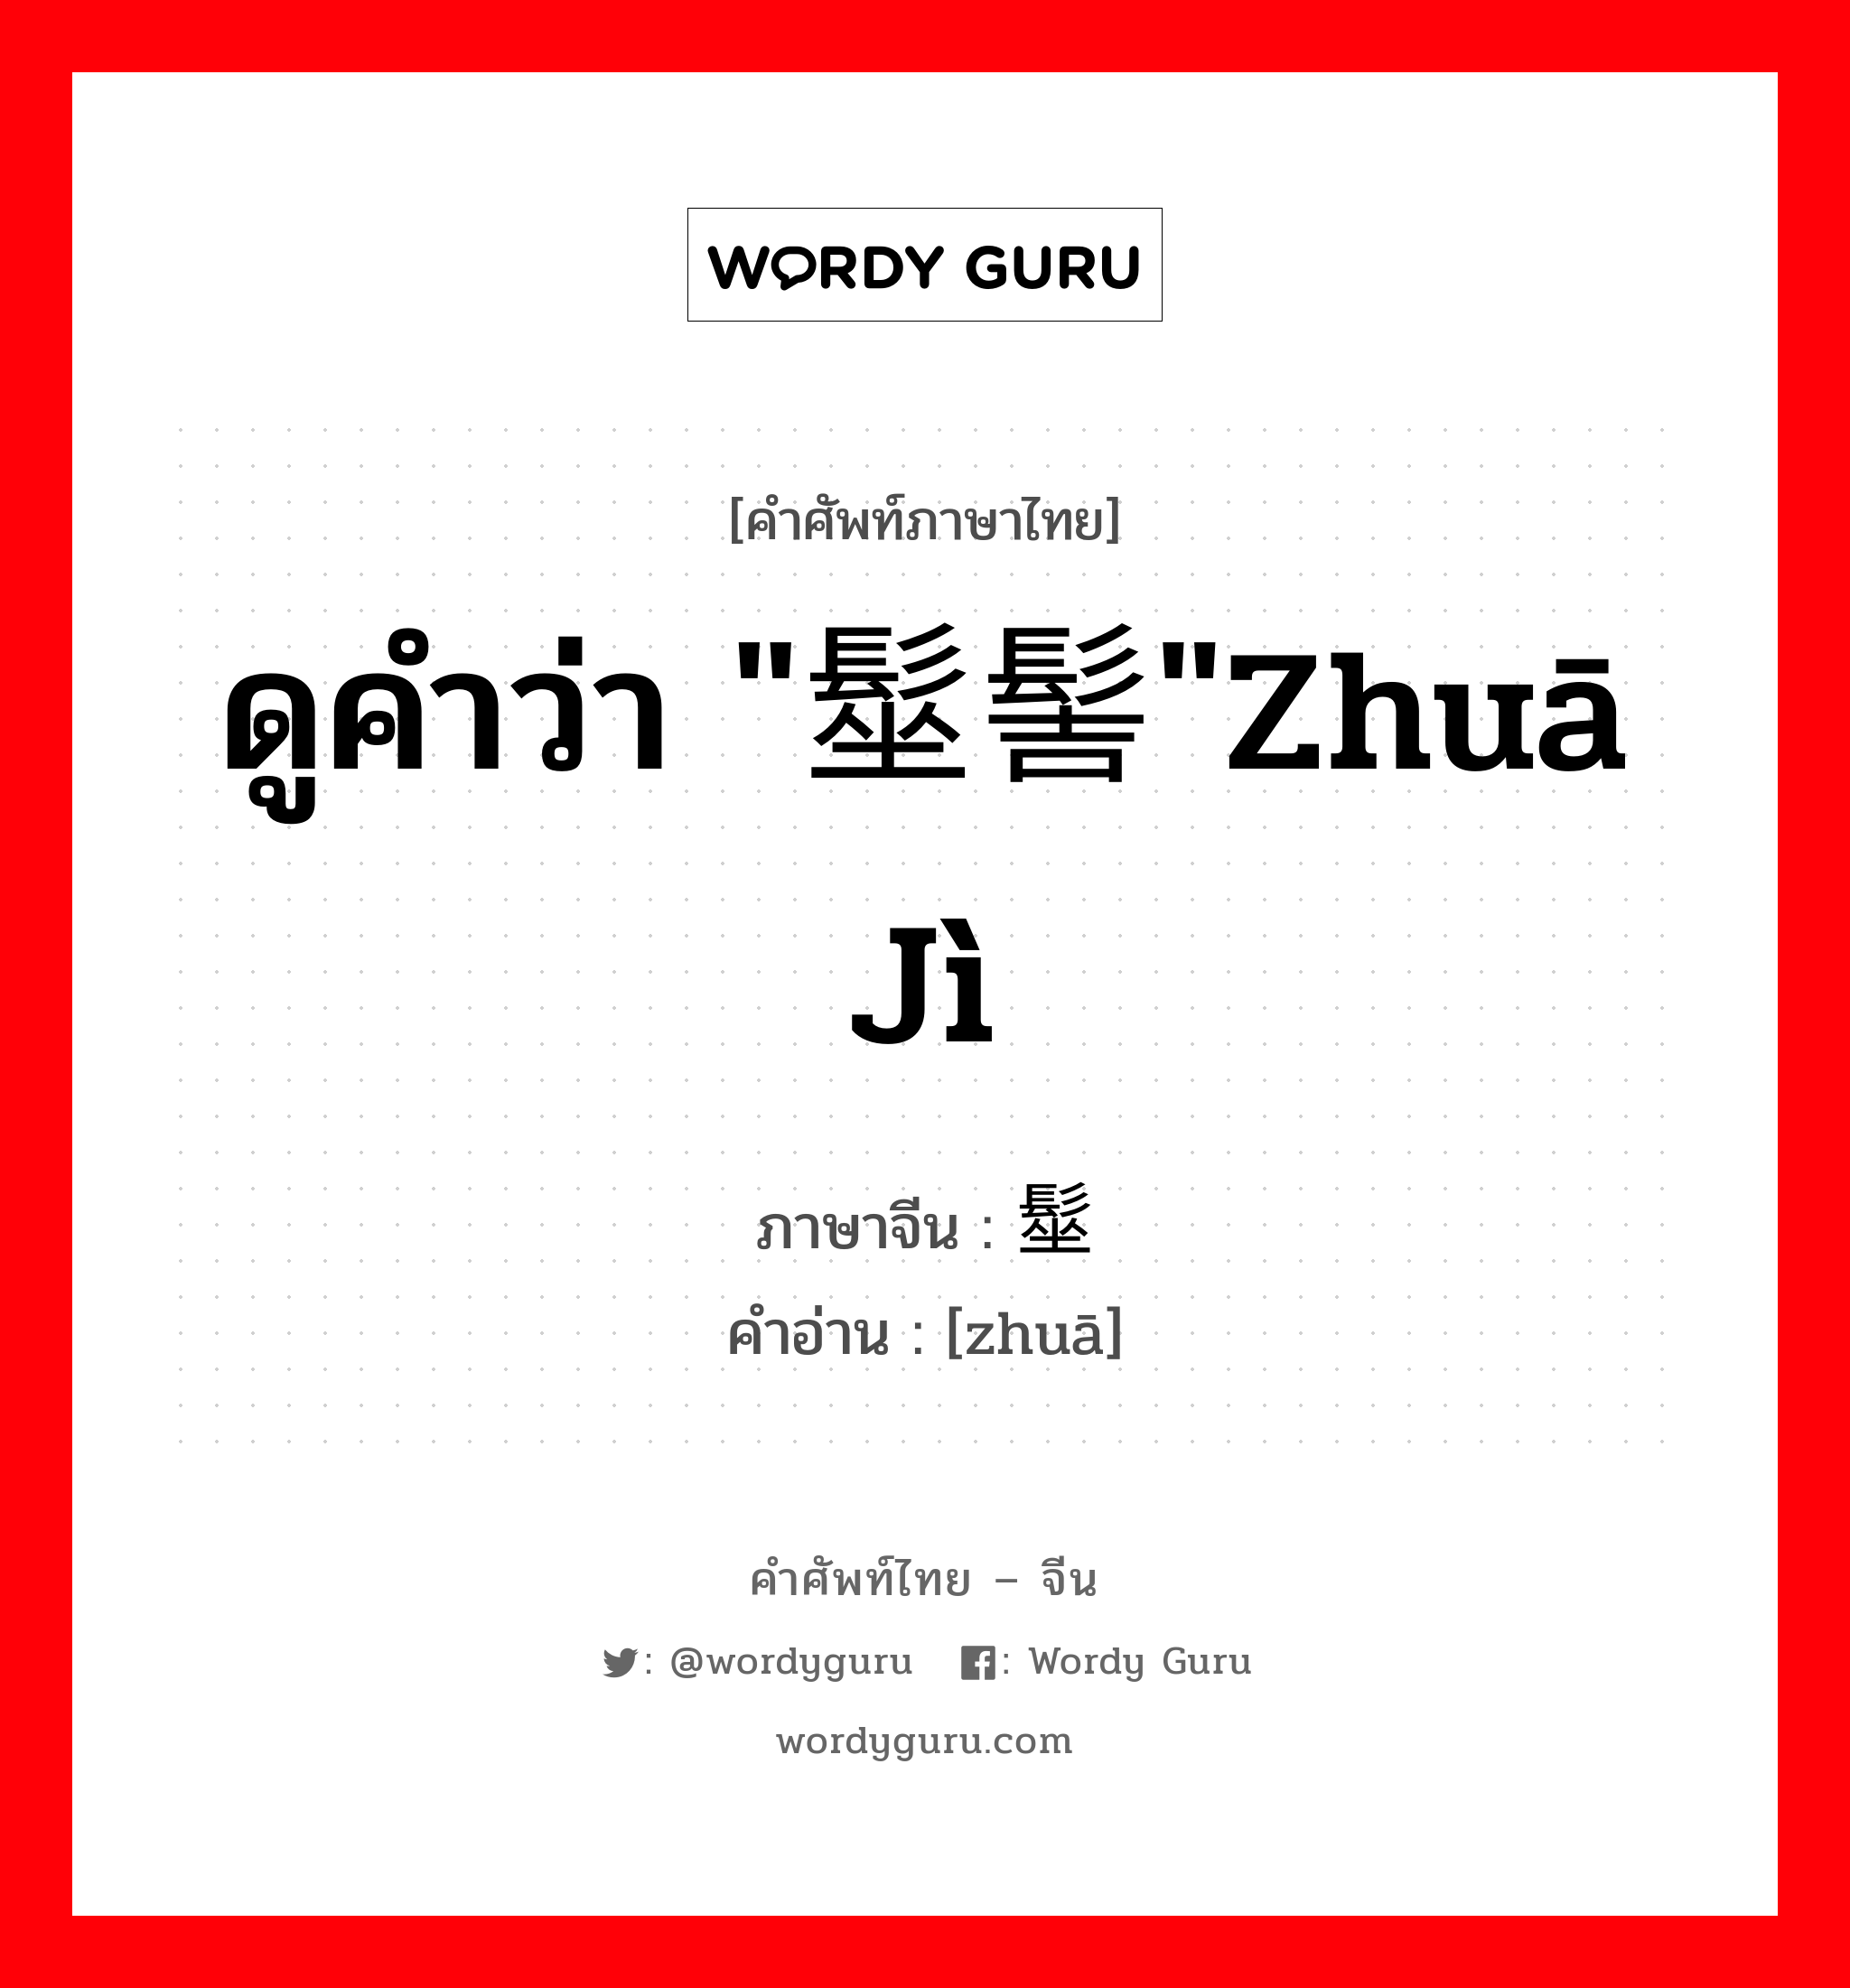 ดูคำว่า "髽髻"zhuā jì ภาษาจีนคืออะไร, คำศัพท์ภาษาไทย - จีน ดูคำว่า "髽髻"zhuā jì ภาษาจีน 髽 คำอ่าน [zhuā]